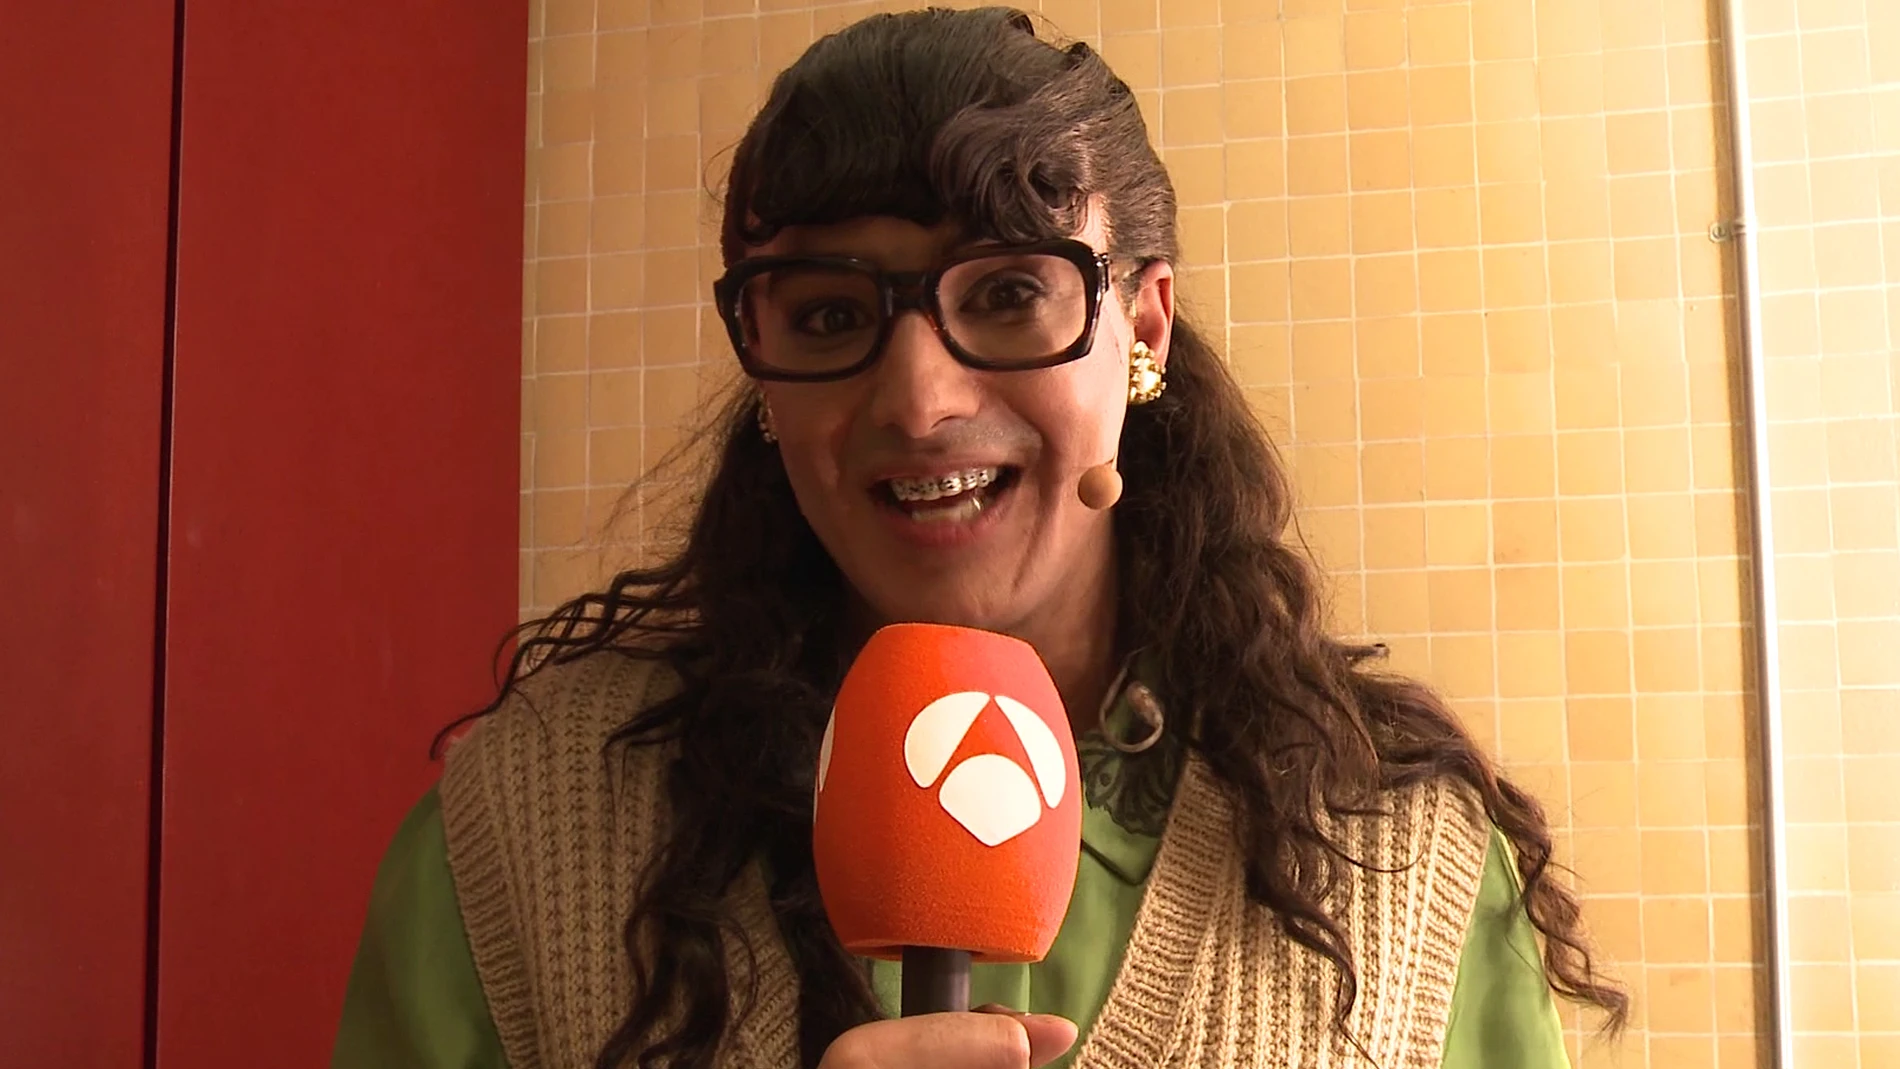 Jorge González, radiante de felicidad tras ganar como 'Yo soy Betty, la fea' en 'Tu cara me suena'